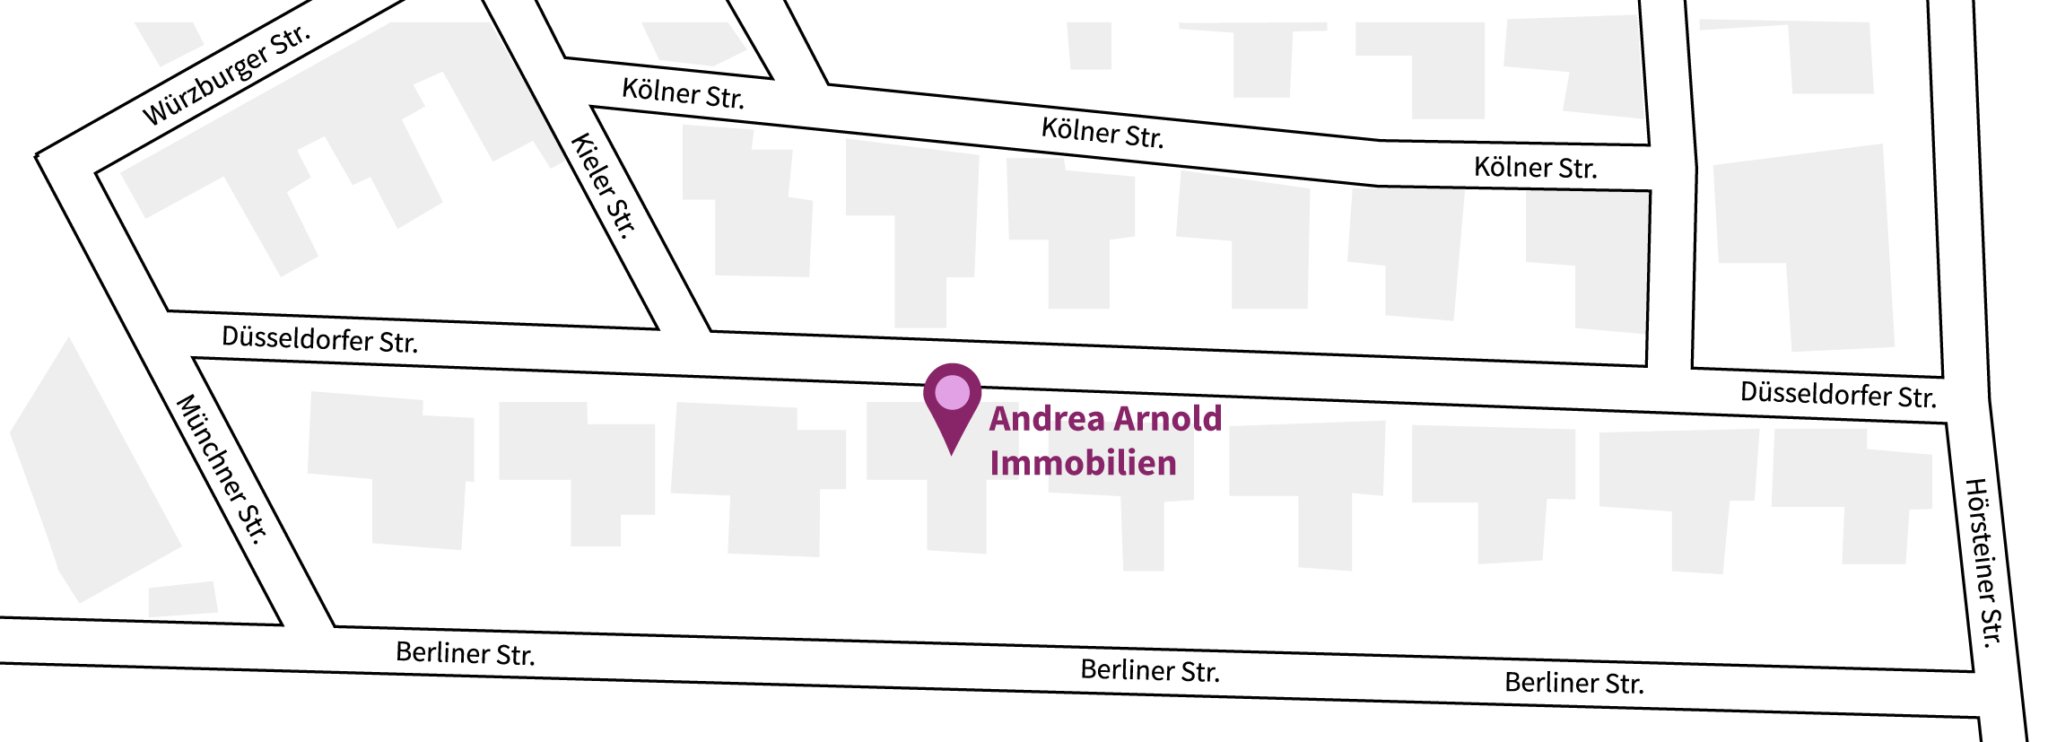 Kartenausschnitt Anfahrt zu Arnold Immobilien